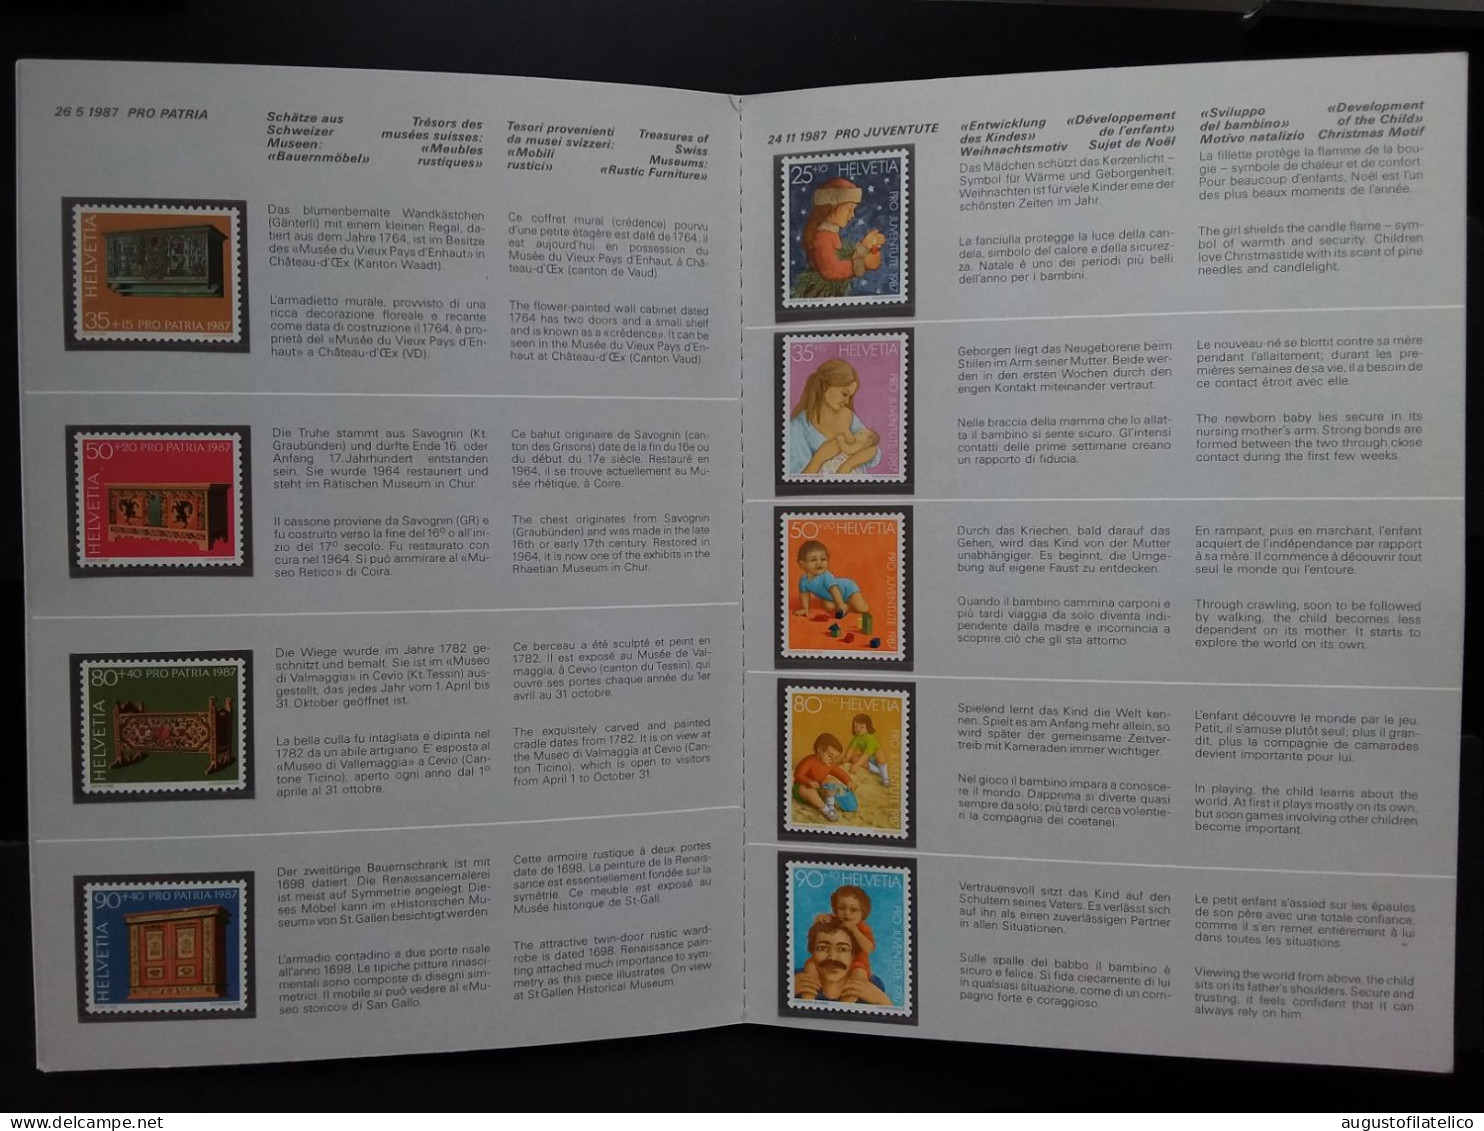 SVIZZERA - Libretto Delle Poste - Anno 1987 Completo - Nuovi ** - Facciale Frs Sv 23,80 (sottofacciale) + Spese Postali - Booklets